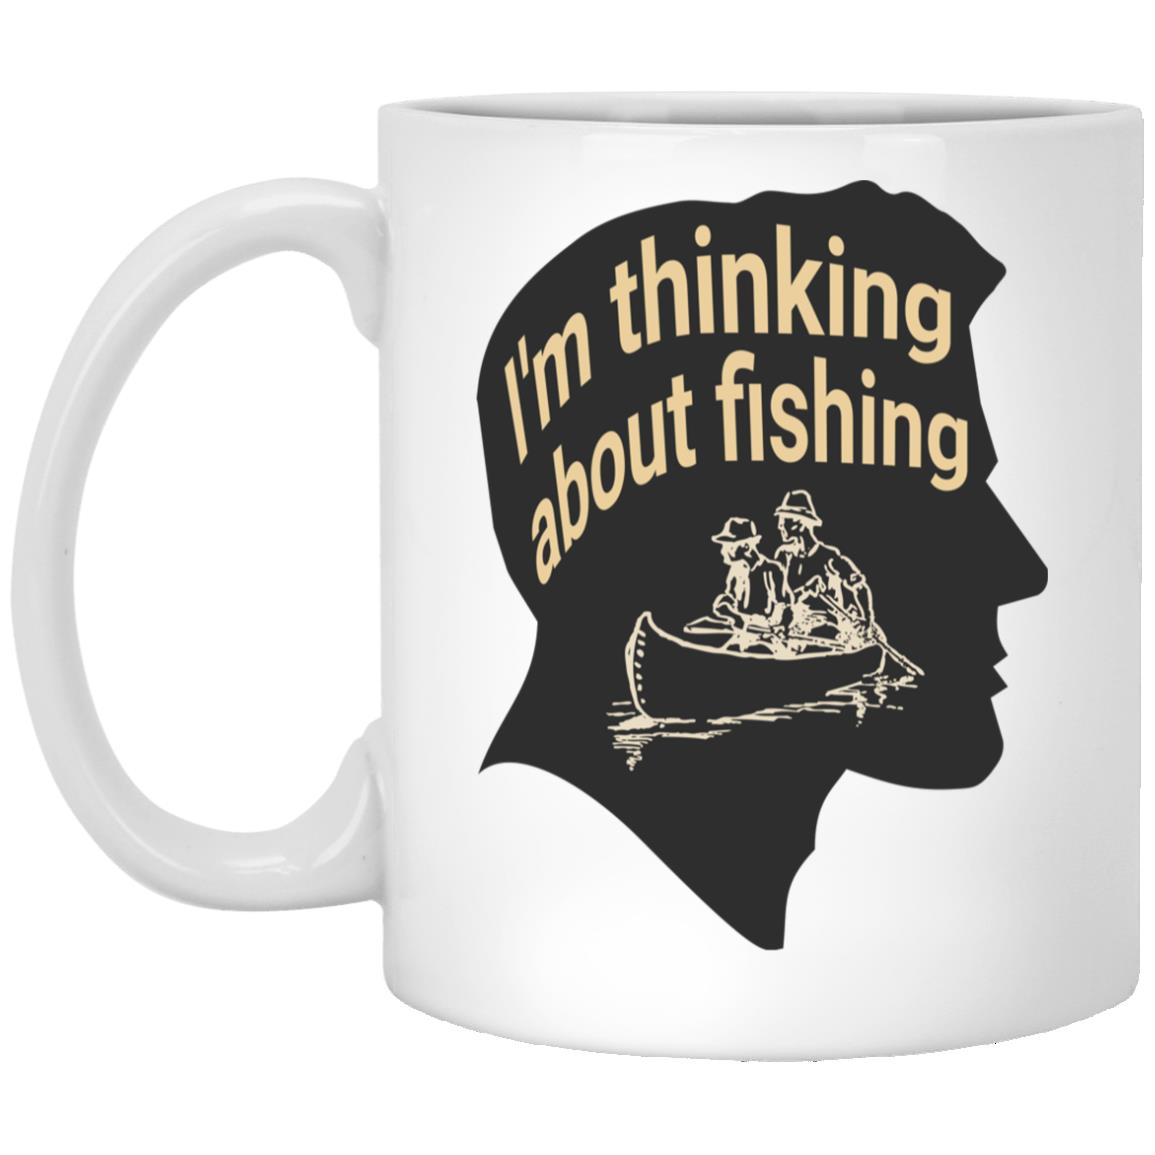 I'm thinking about fishing_2 11 oz. white mug